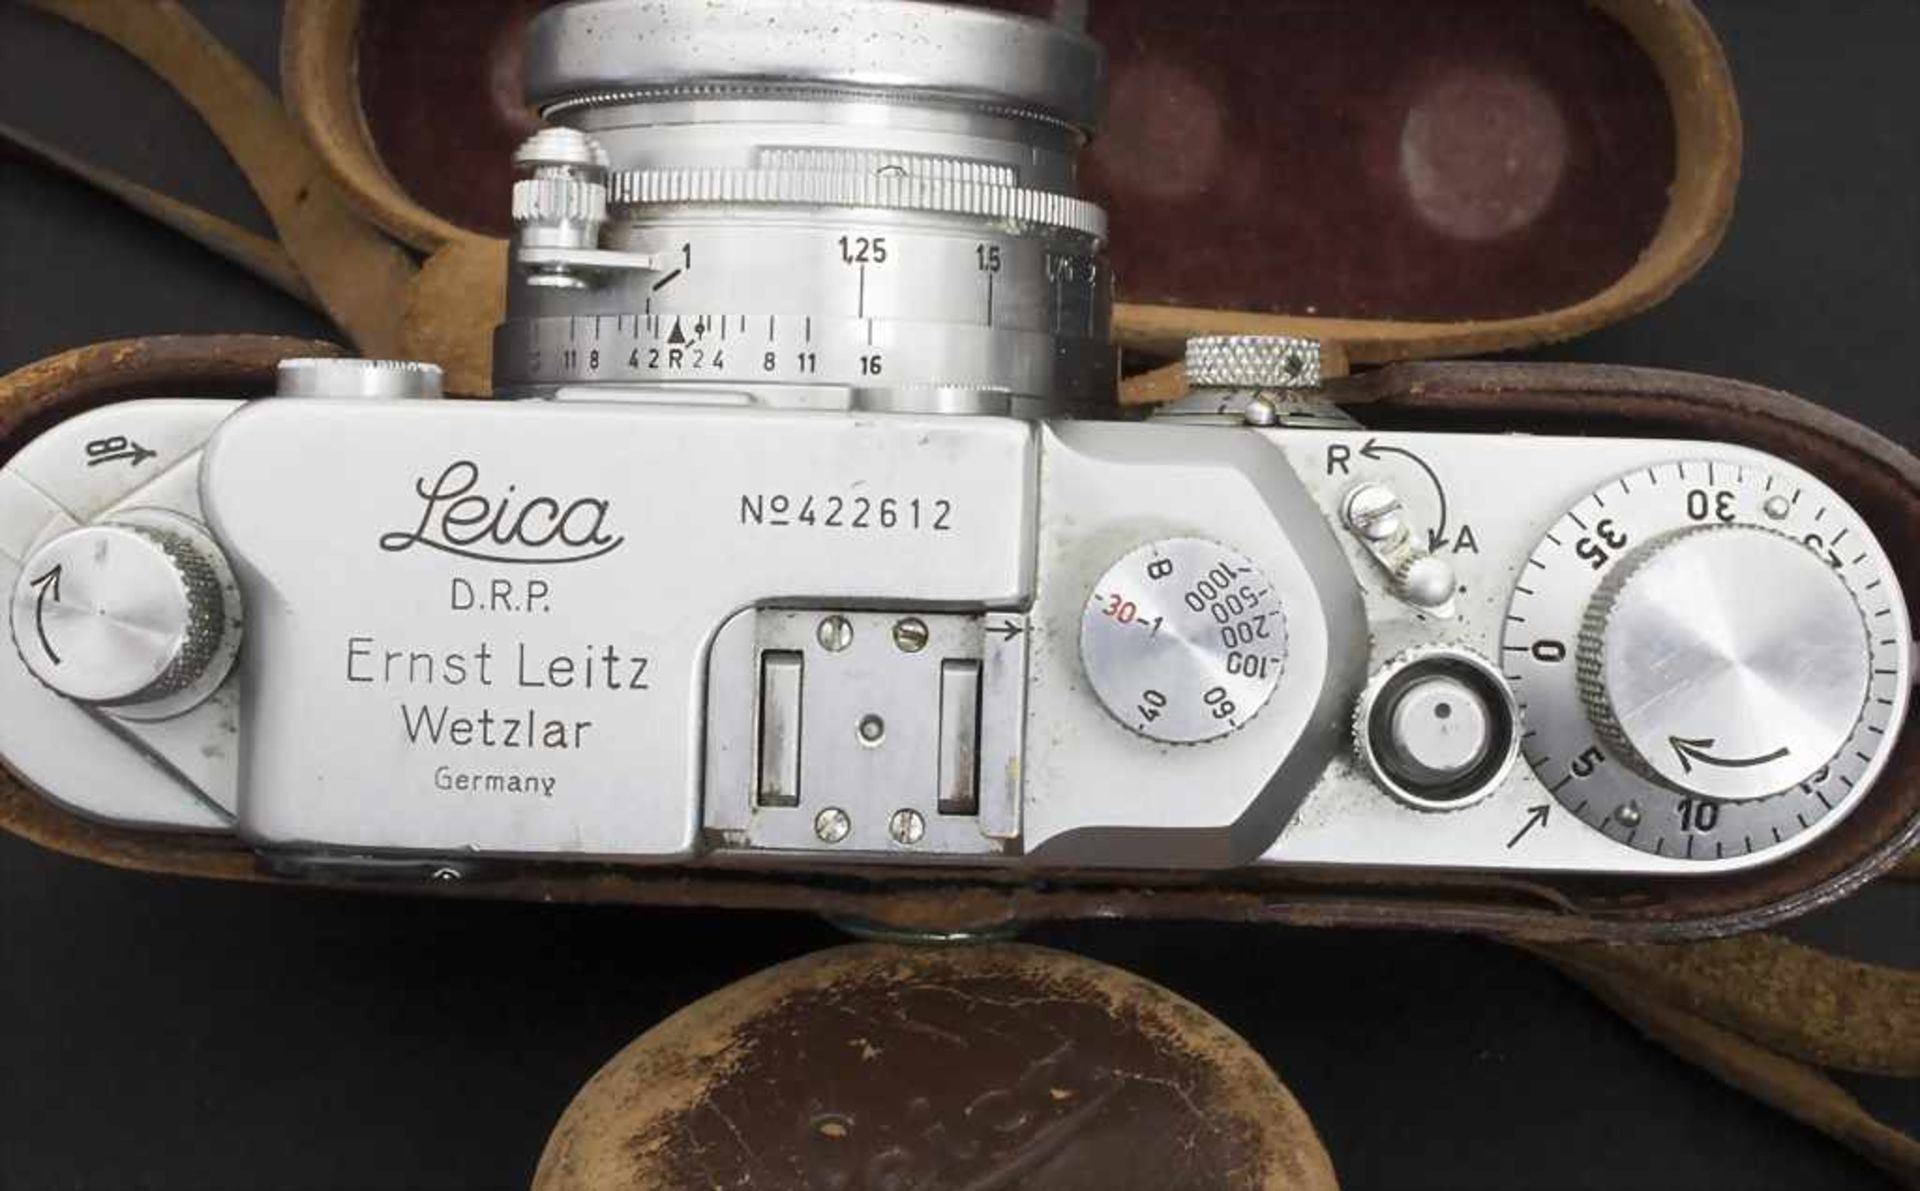 Leica, Ernst Leitz GmbH, WetzlarKamera Nr. 422612, Objektiv f=5cm 1:2 Nr. 629832.Z - Image 2 of 2